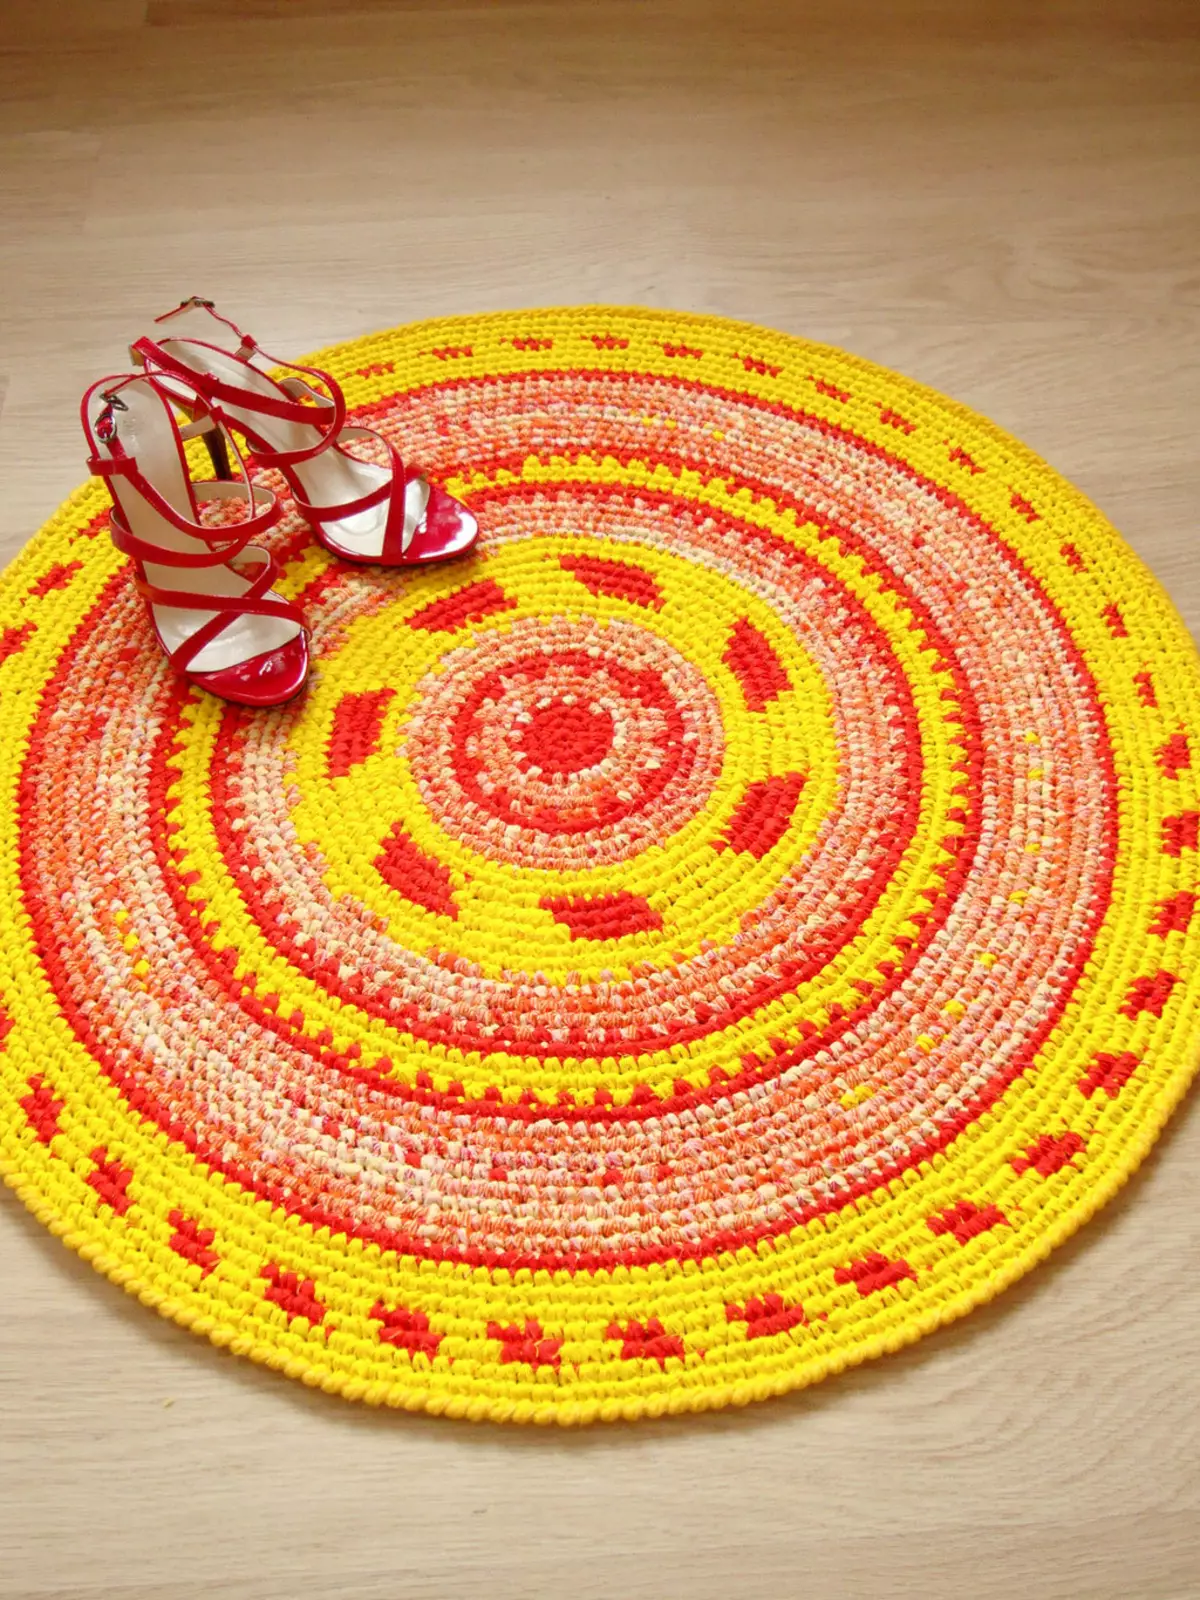 Knitted rugs crochet ti patchworks: kumaha carana dasi jeung leungeun sorangan karpét di lantai tina rasa patchwork dina gaya patchwork, buleud sarta model rustic 8165_8